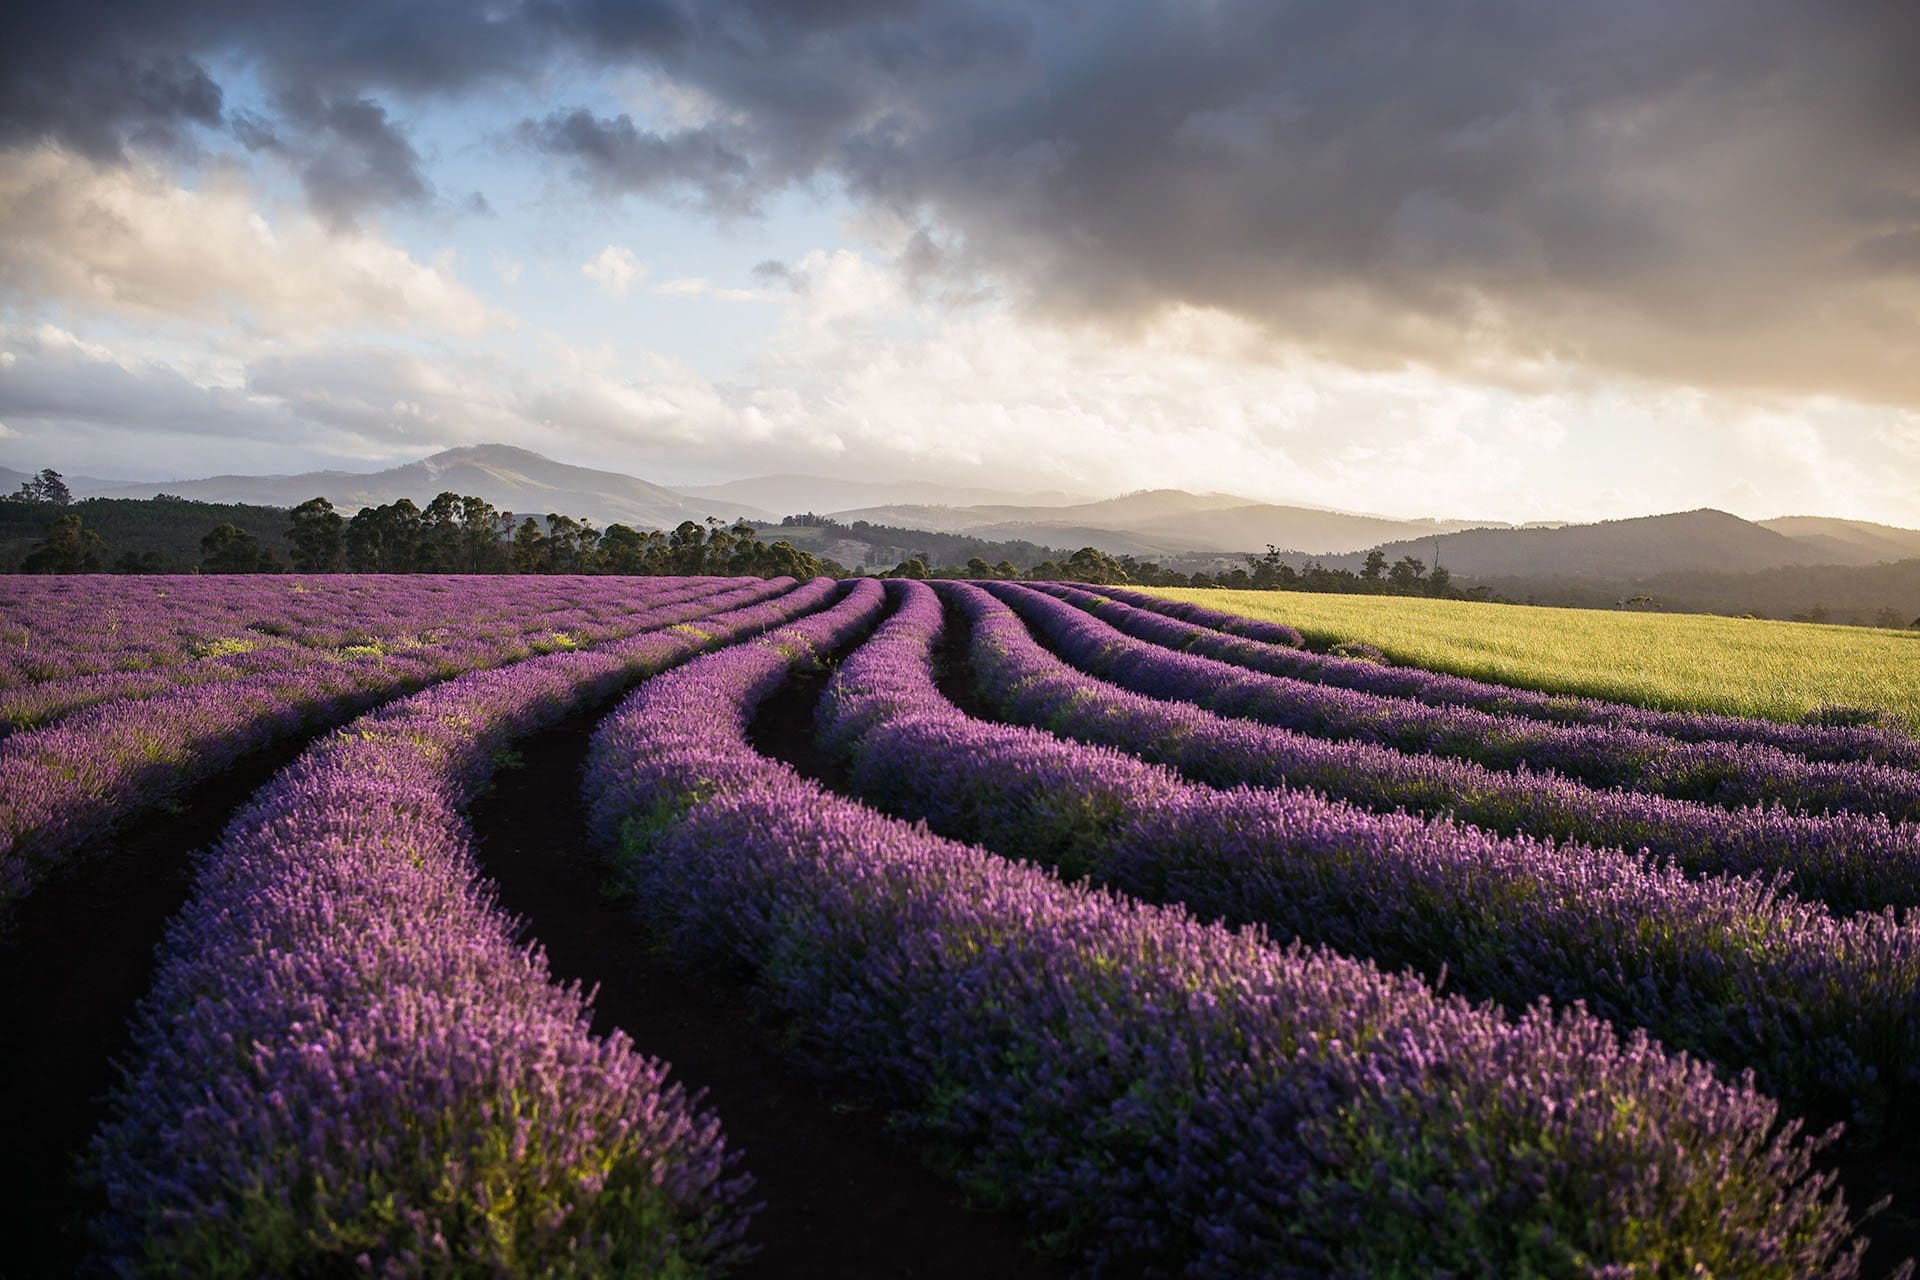 bridestowe-lavender-banner-purple-contours-photo-credit-Ockert-Le-Roux-2014.jpg